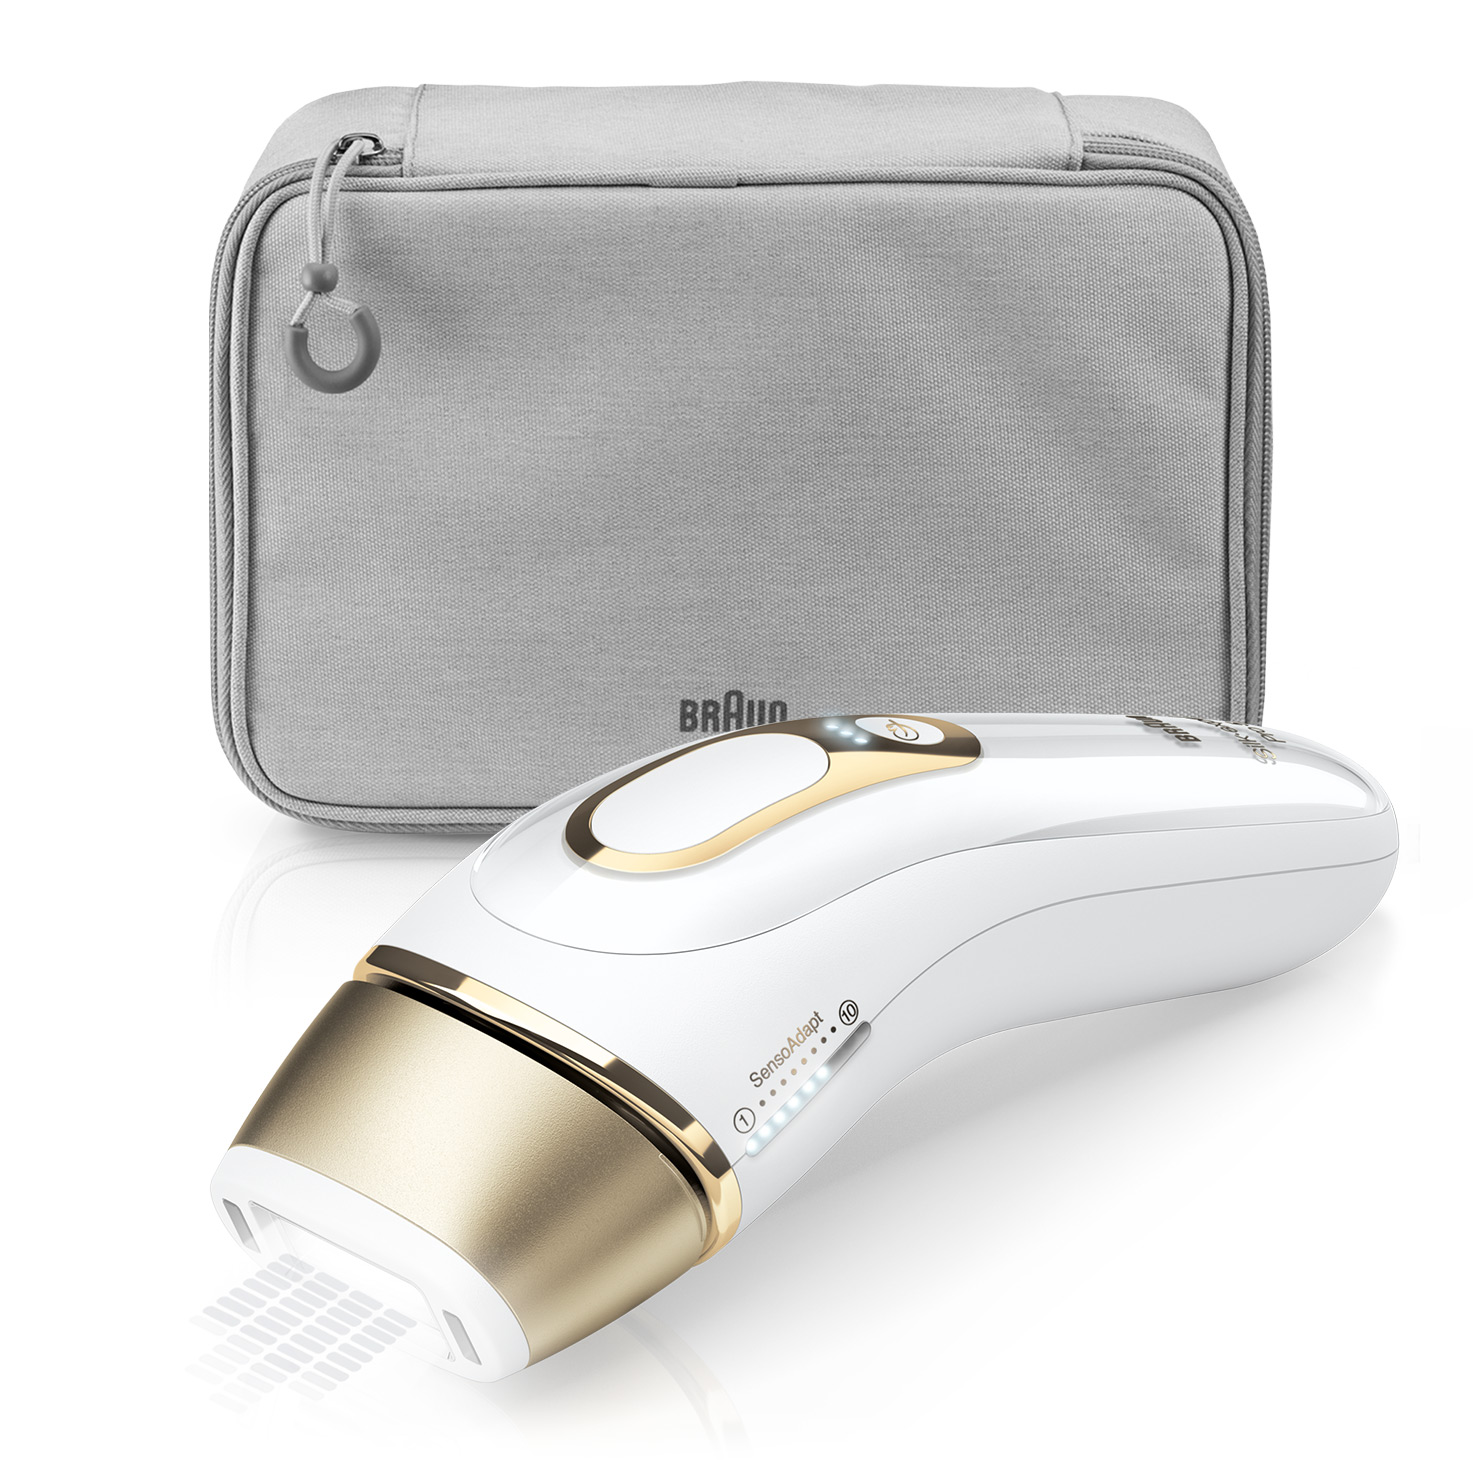 verband Gewend Iedereen Silk-expert Pro 5 PL5014 IPL hair removal machine | Braun UK